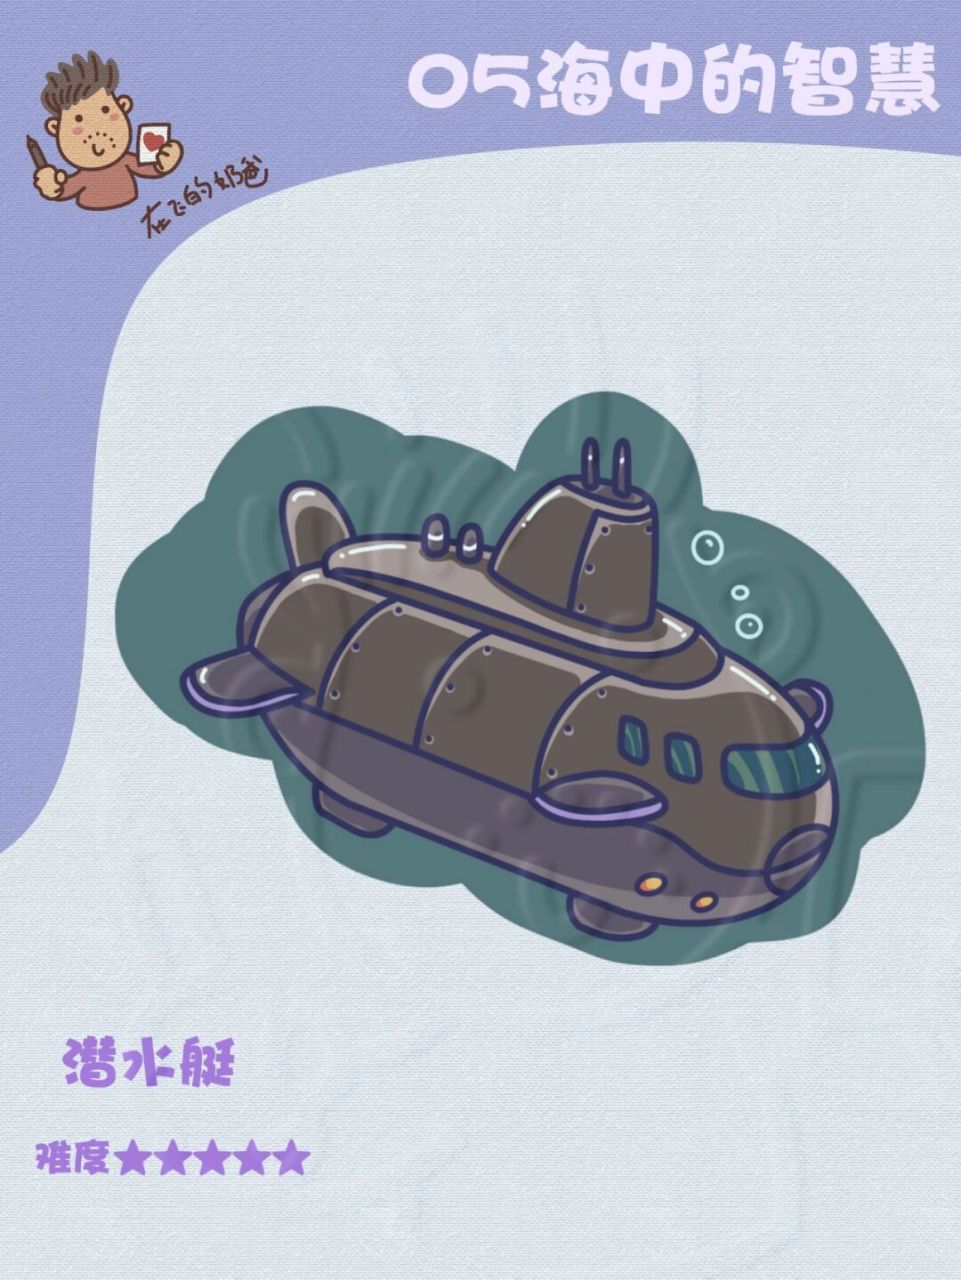 军事简笔画潜水艇图片